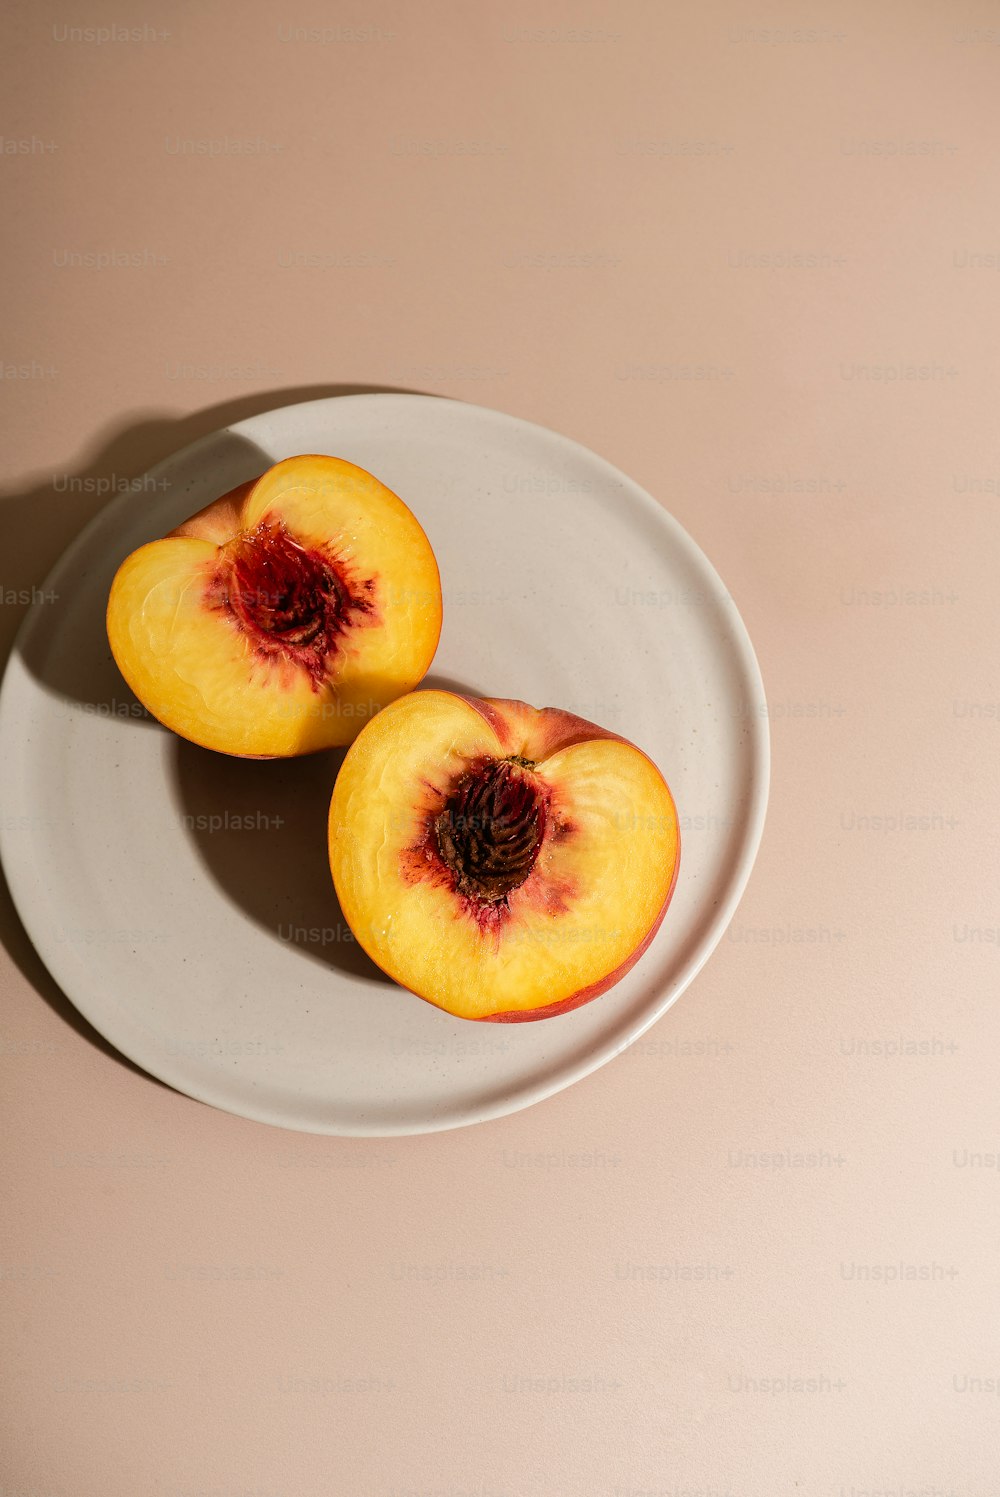 un piatto bianco sormontato da due pezzi di frutta